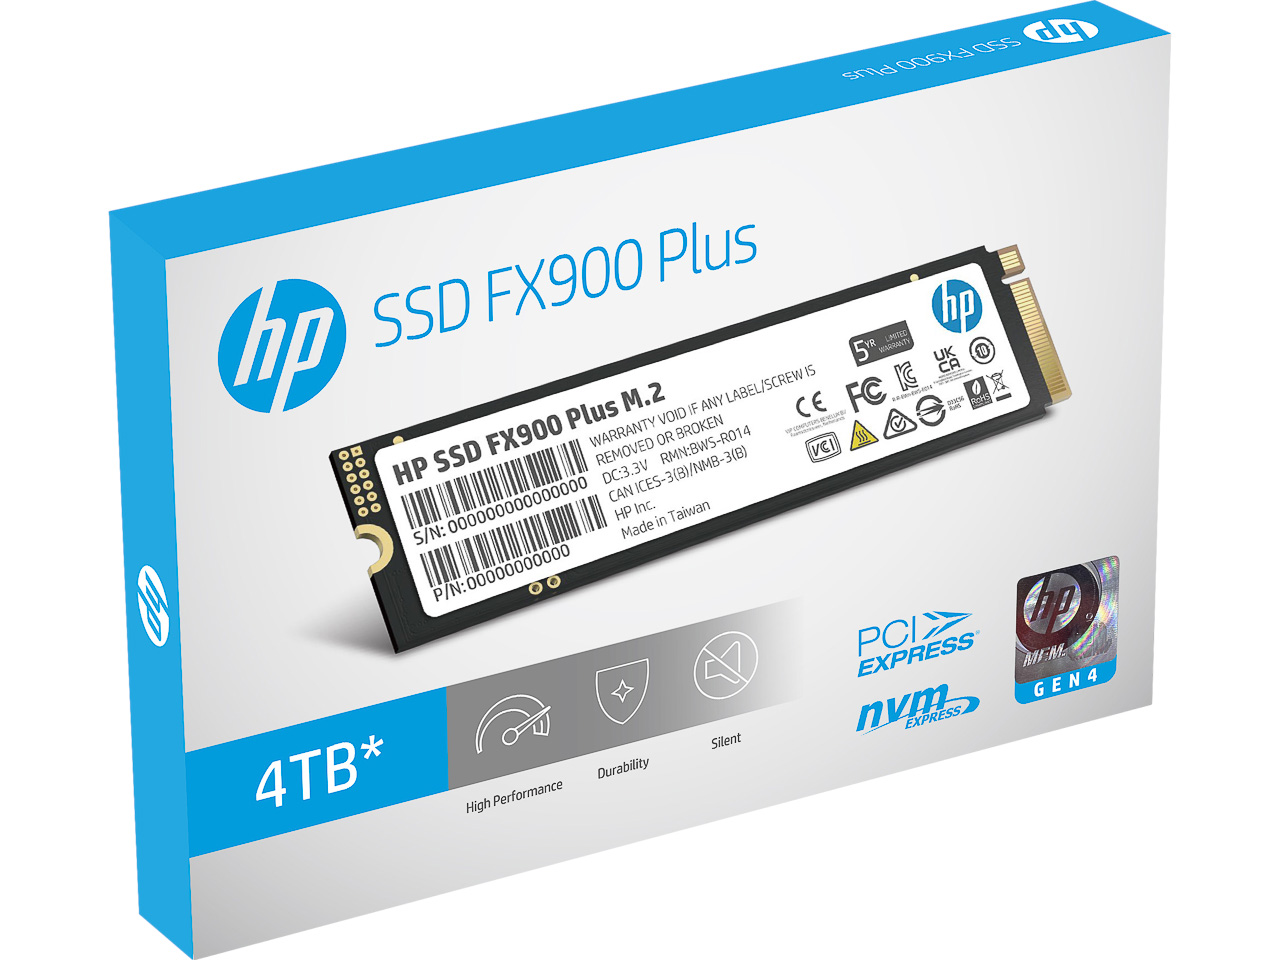 HP SSD FX900 PLUS 4TB M.2 NVME 7F619AA#ABB intern 1